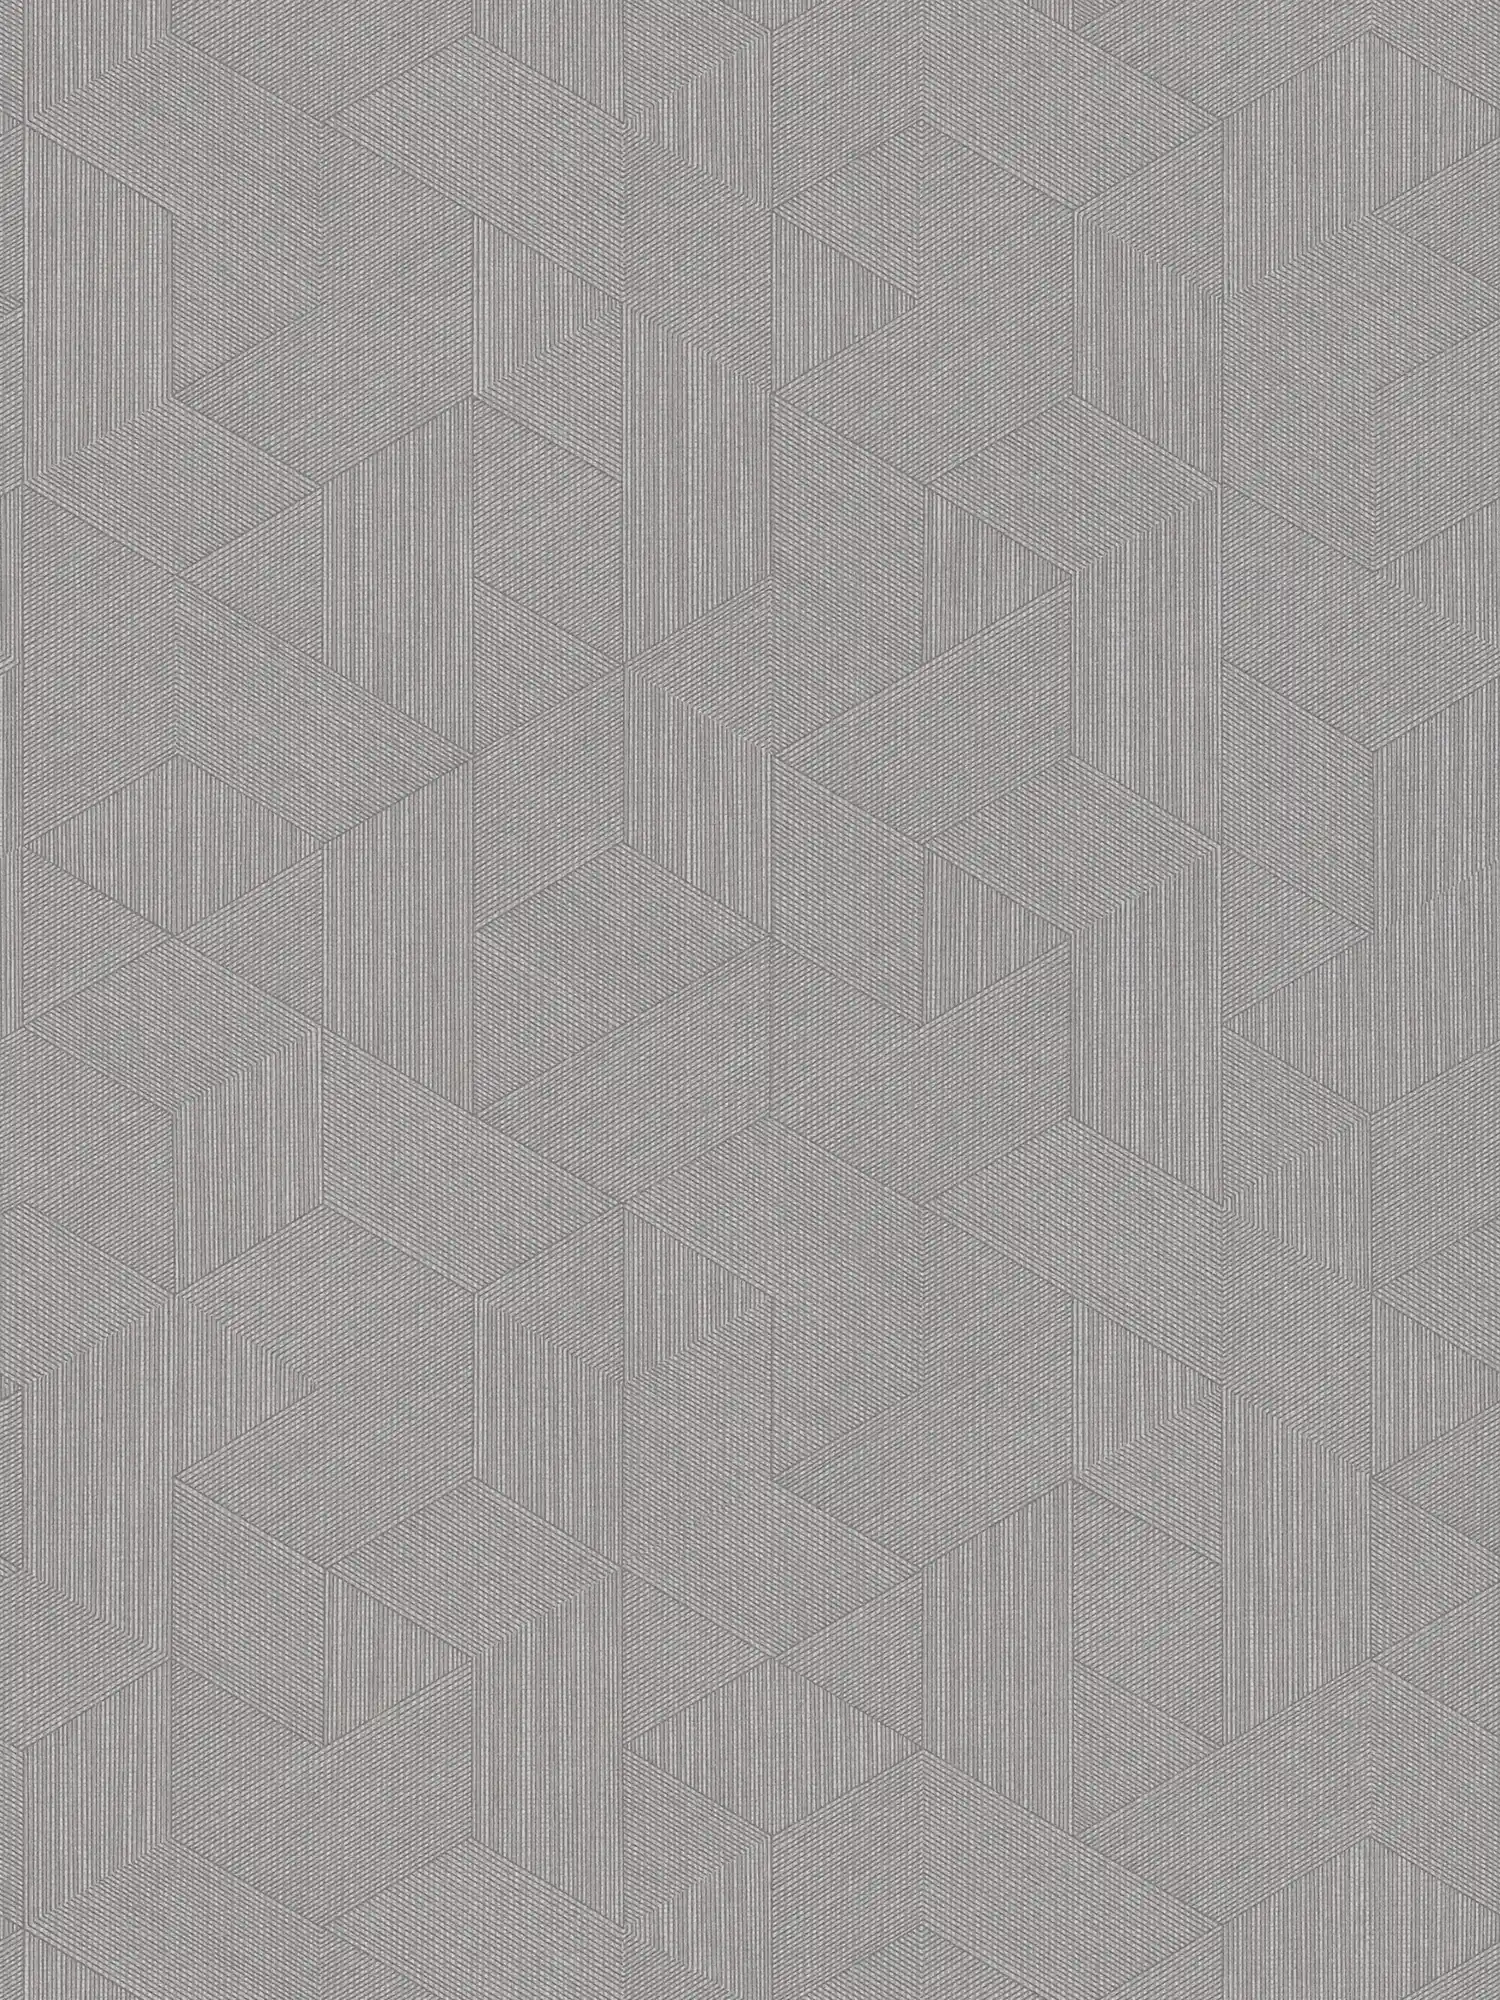 Behang grijs met grafisch patroon & glanseffect - grijs, bruin
